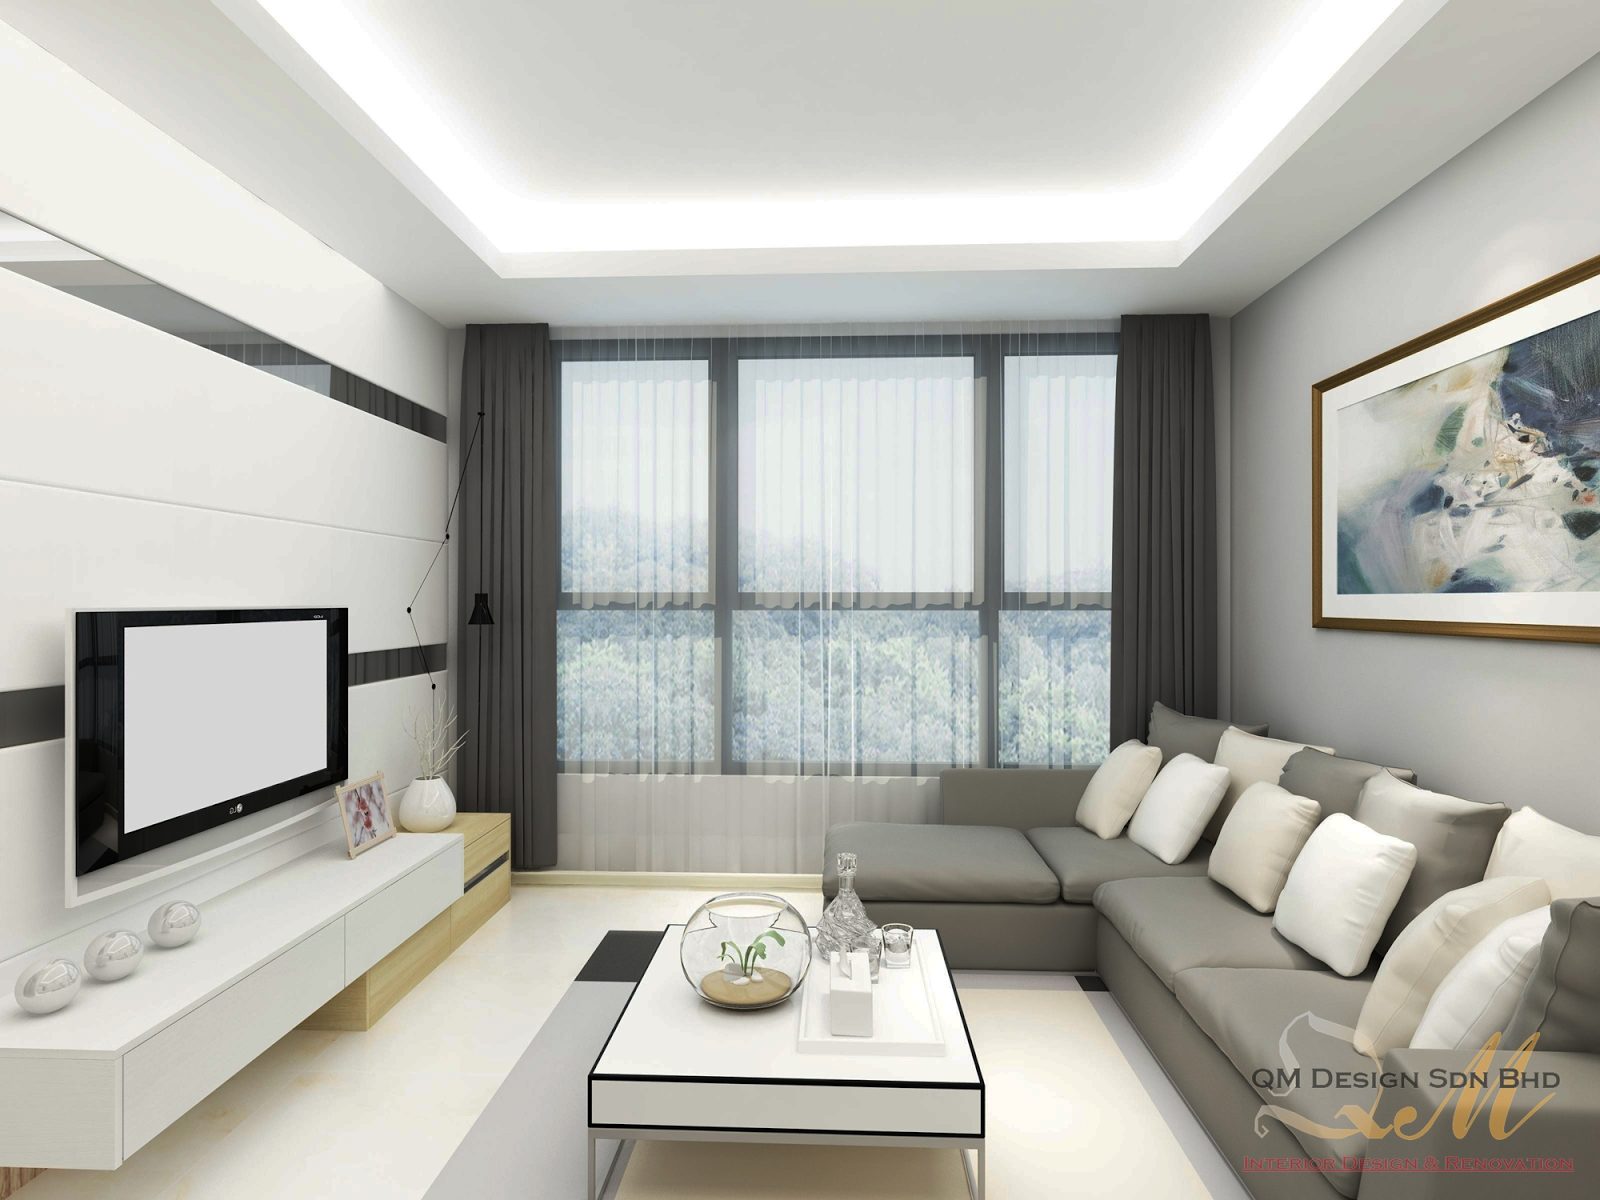 Condominium in Cheras. Project by: QM-design-sdn-bhd